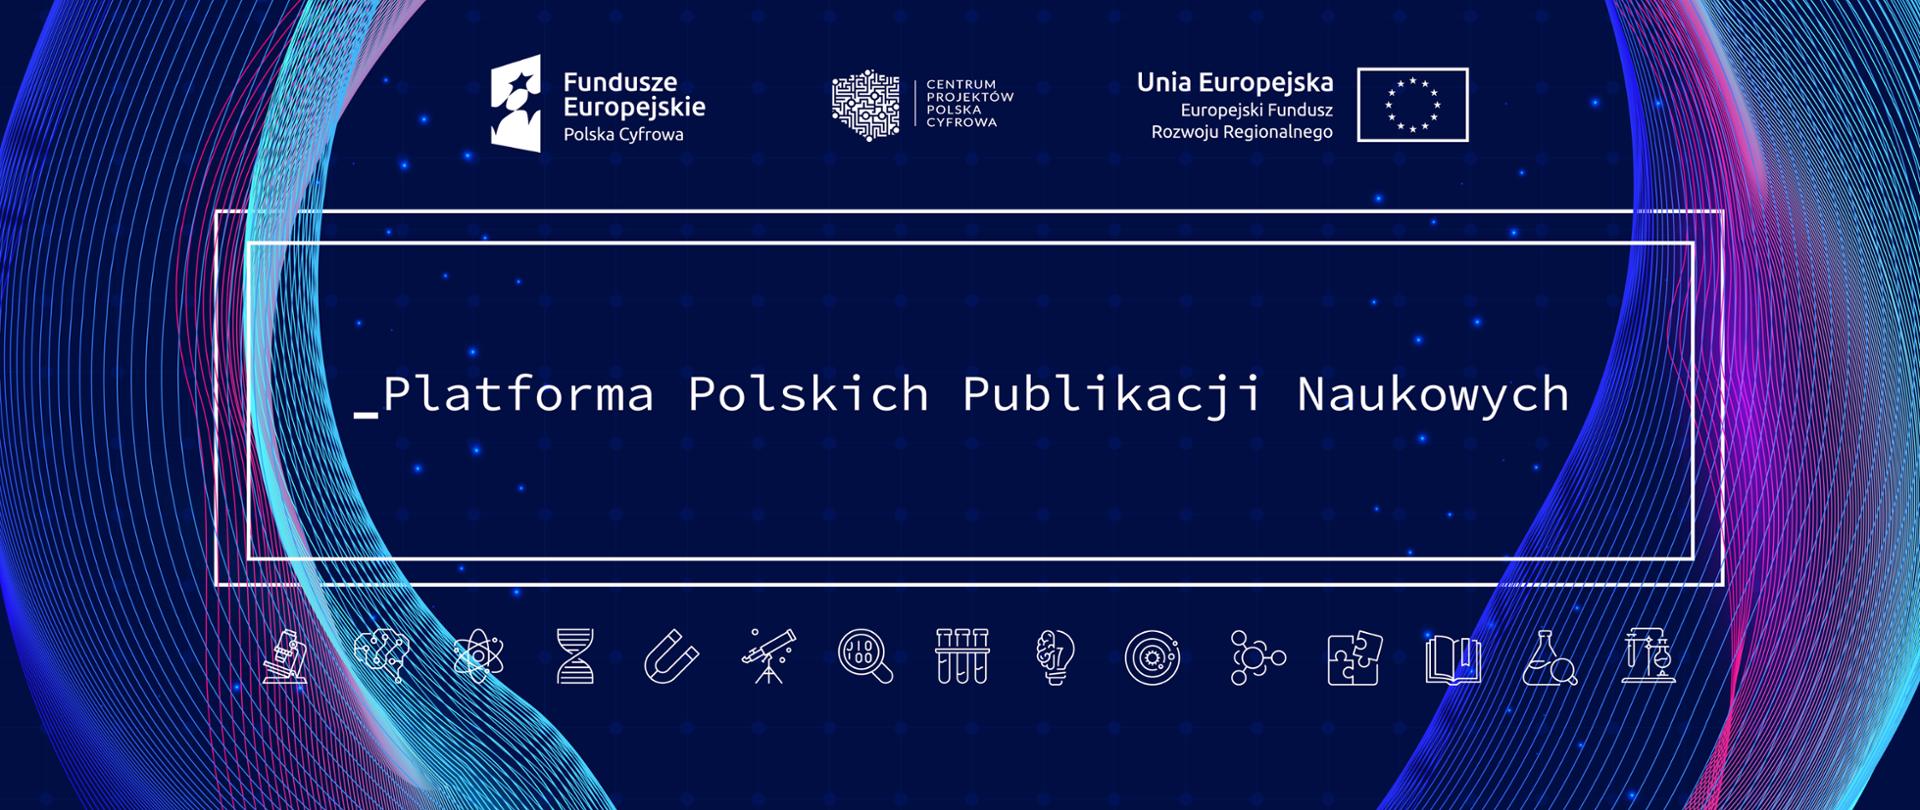 Platforma Polskich Publikacji Naukowych